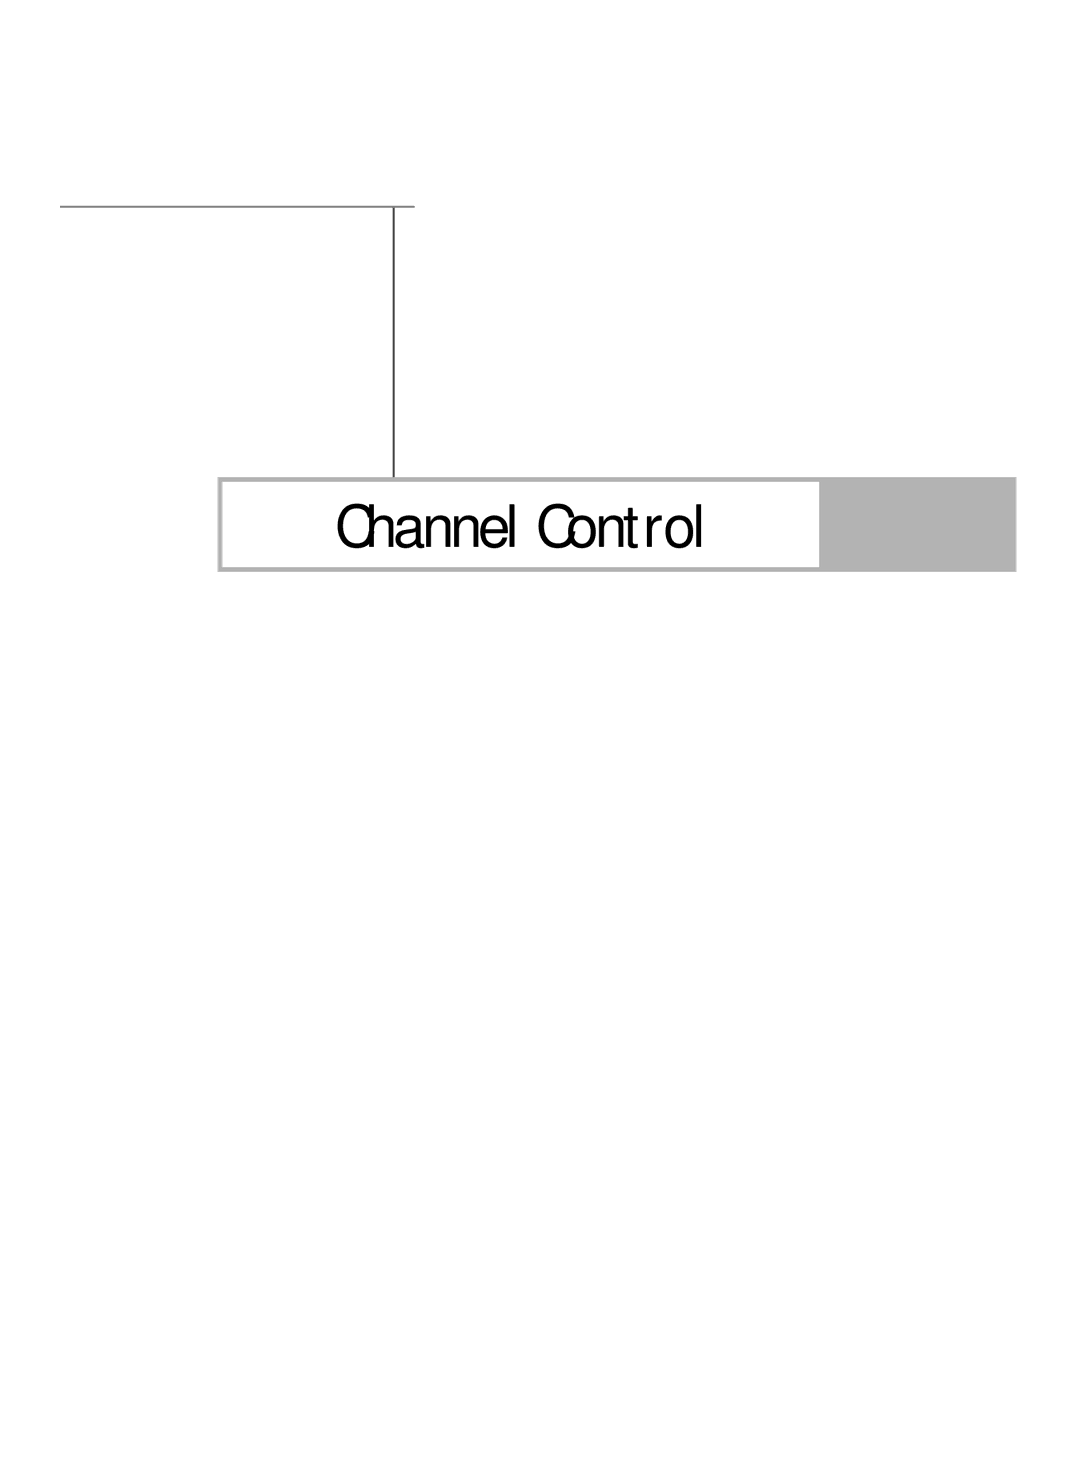 Samsung HL-R6167W, HL-R5067W, HL-R5667W manual Channel Control 